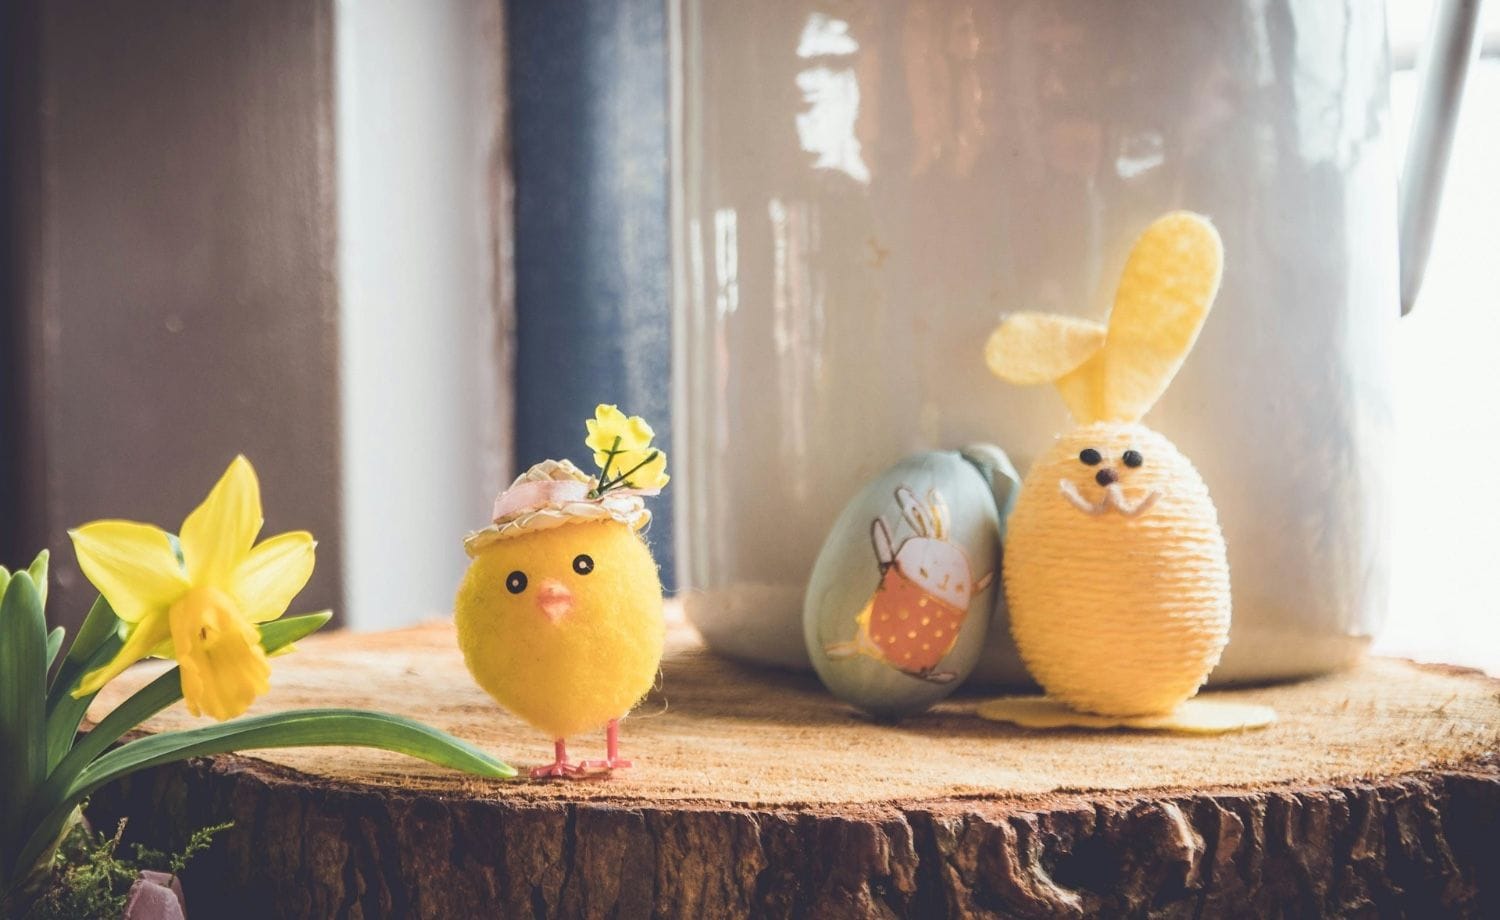 dekorative Figuren von Hühnern und Osterhasen aus Wolle